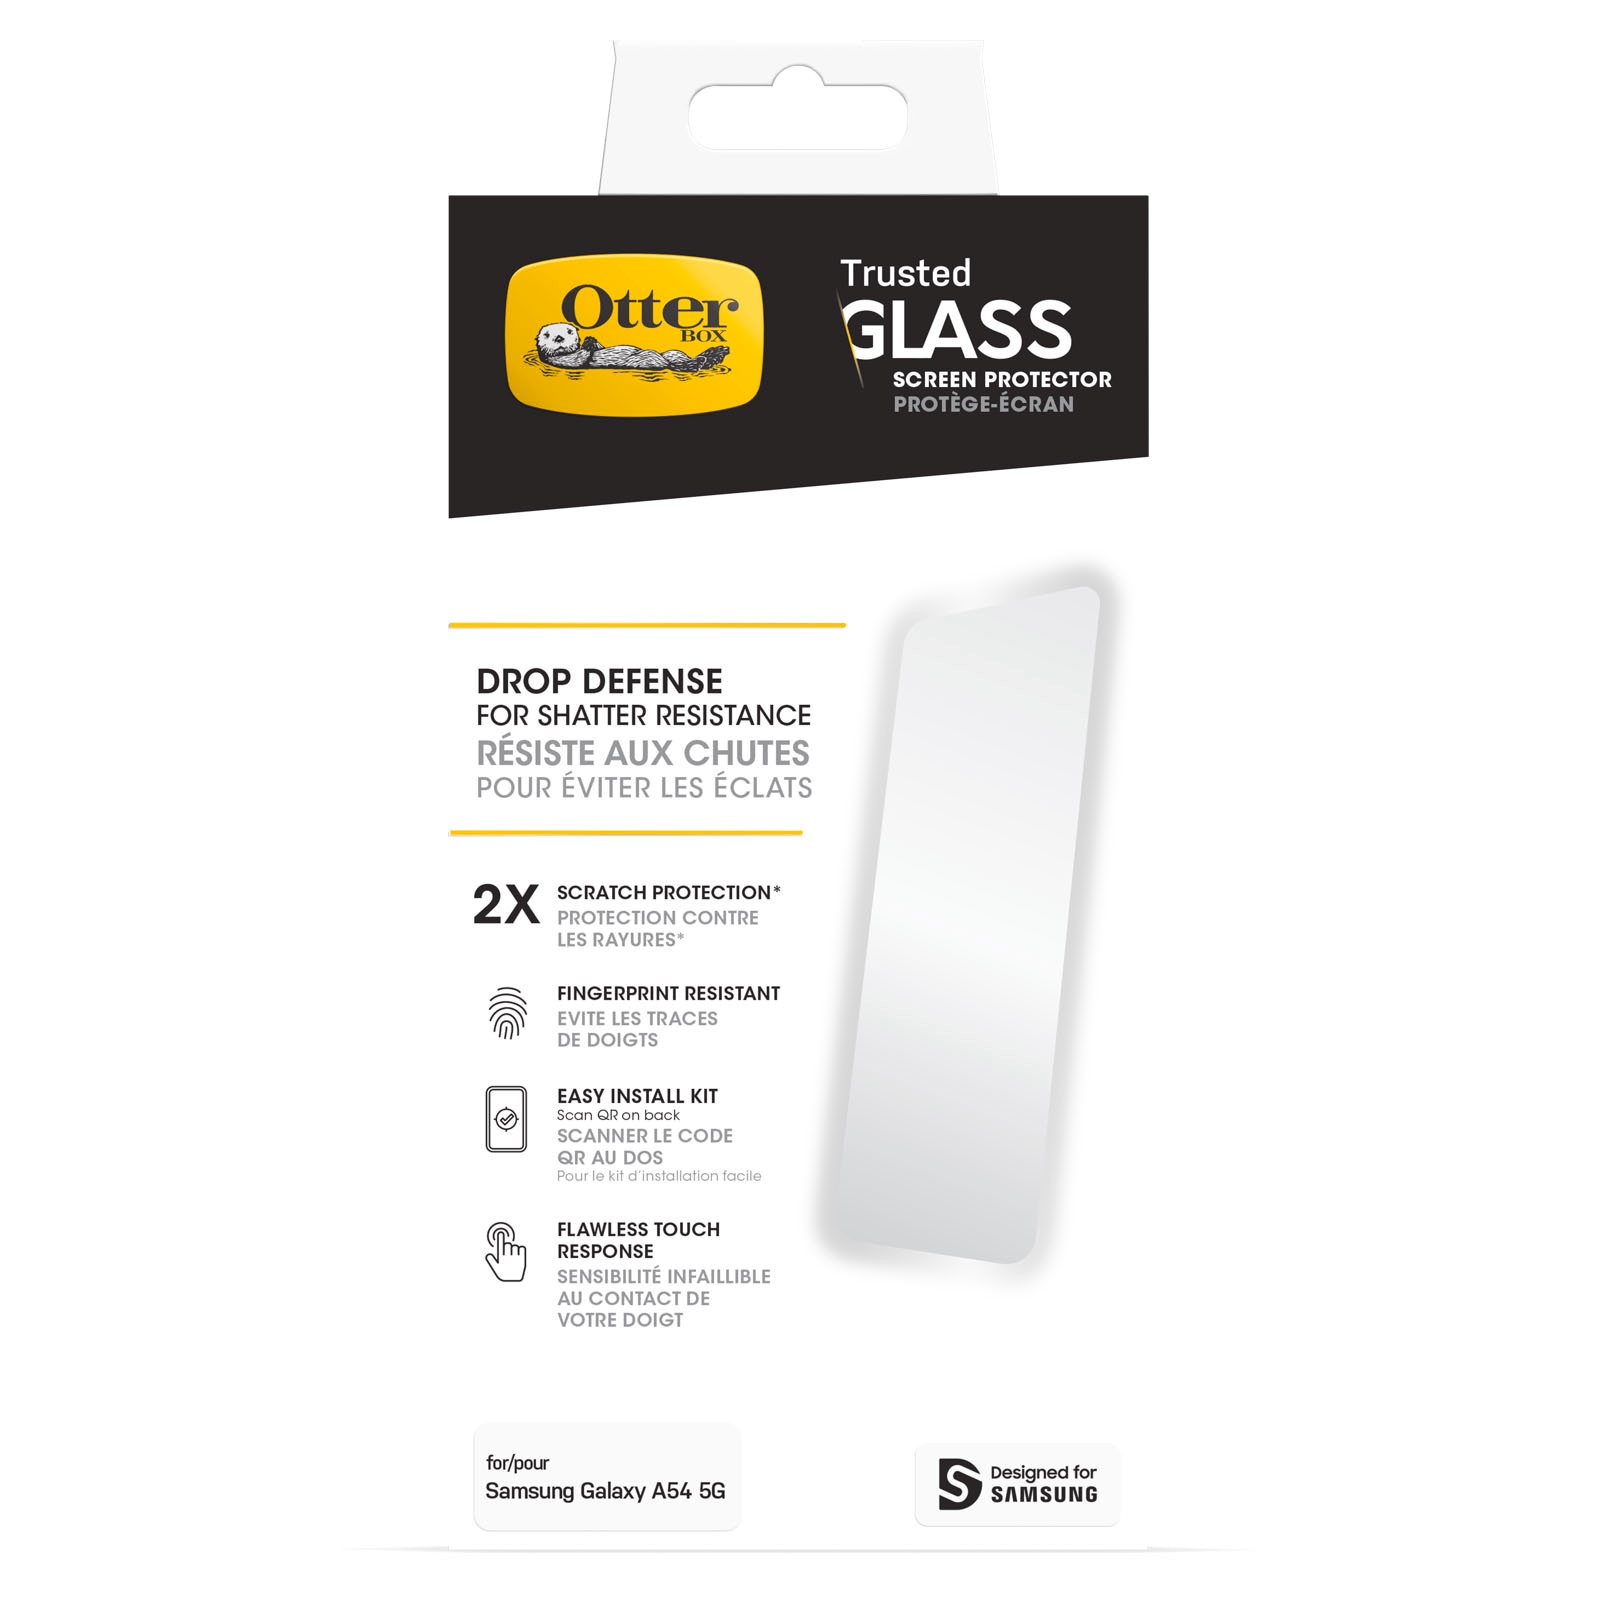 Otterbox Displayschutzfolie »Trusted Glass Displayschutz für Samsung Galaxy A54«, gehärtetes Glas, x2 Schutz vor Brüchen, Kratzern und Stürzen